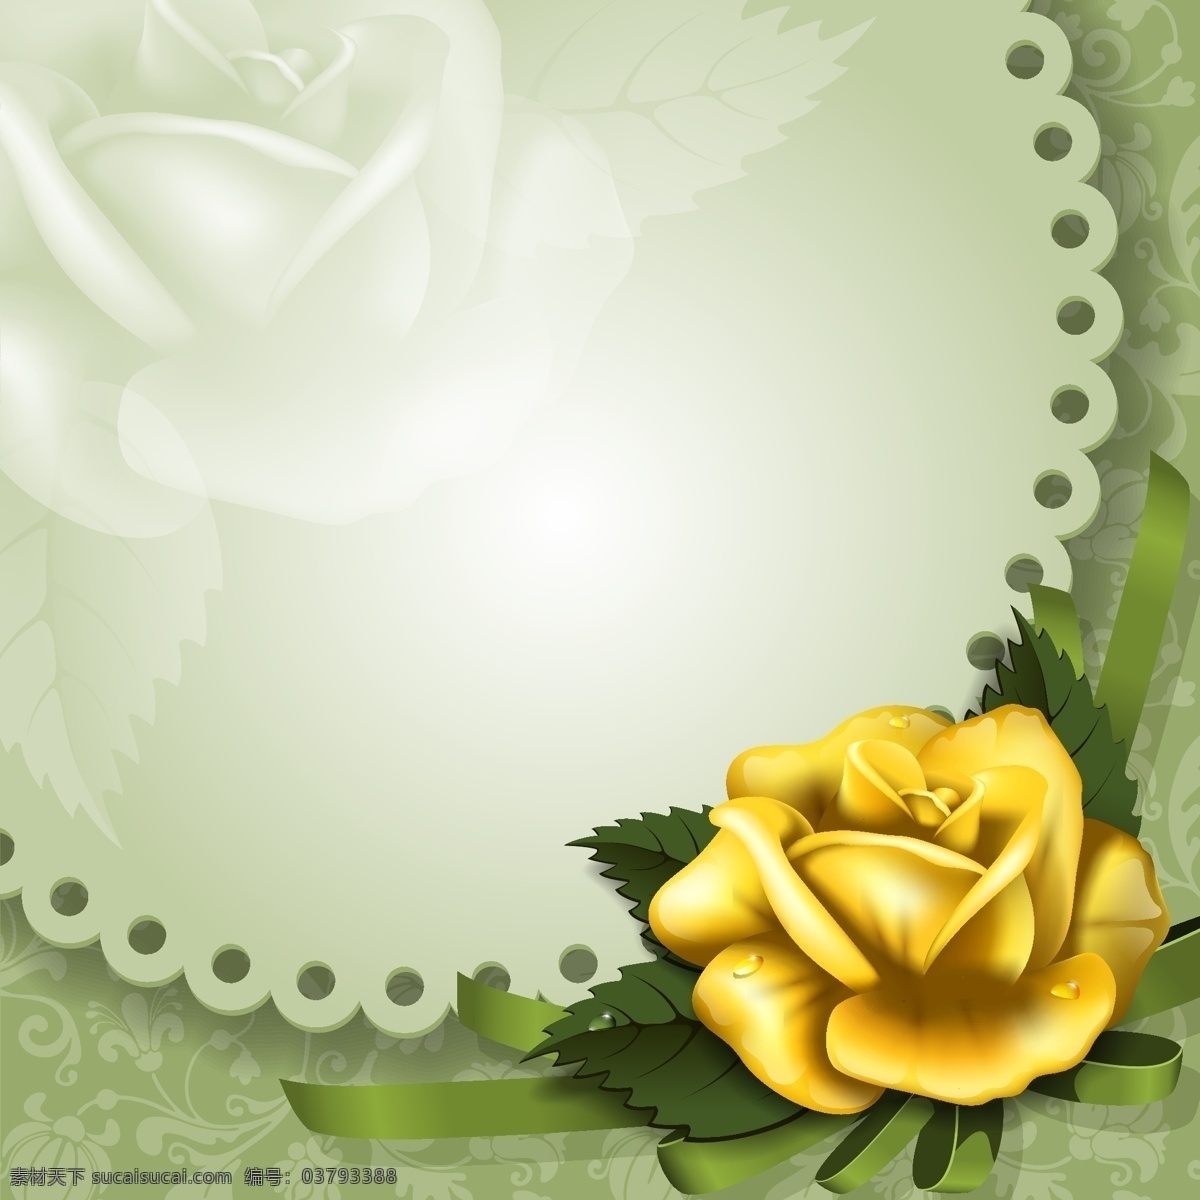 金色 玫瑰 装饰 边框 金色玫瑰 玫瑰边框 花卉边框 边框装饰 矢量素材 白色